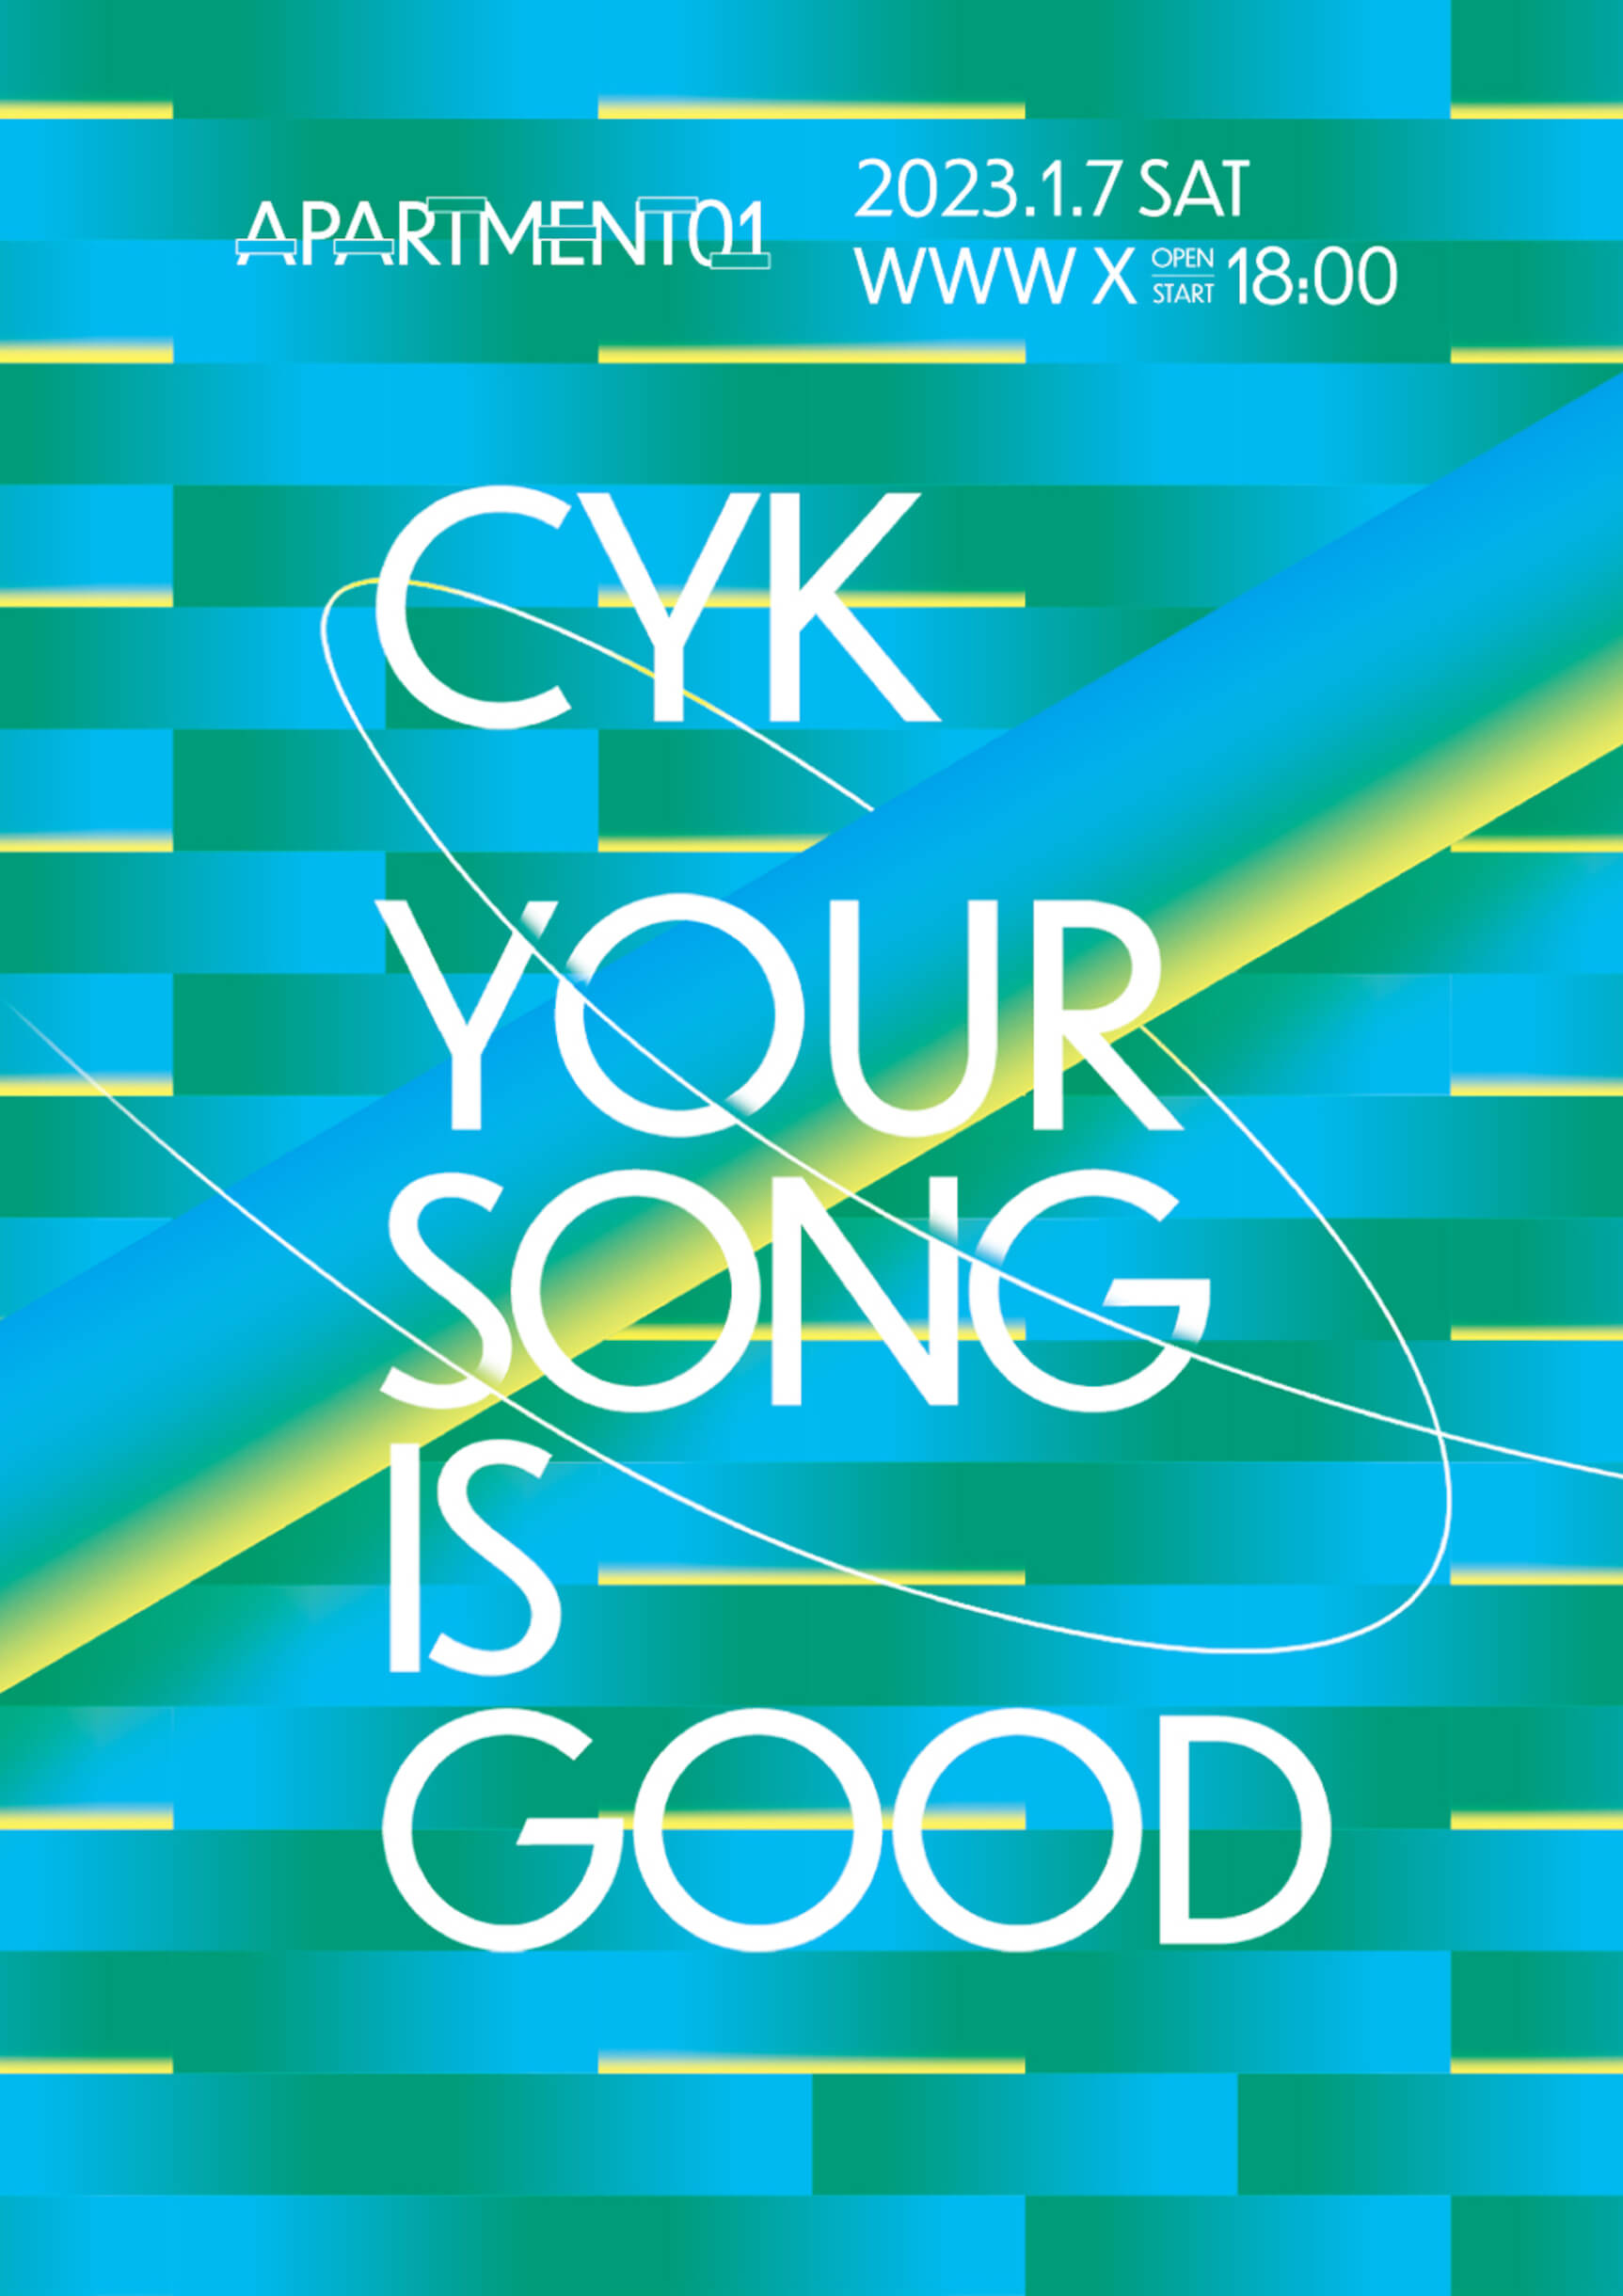 WWWによる新パーティー＜APARTMENT＞初回にYOUR SONG IS GOODとCYKが登場 music221111-yoursongisgood-cyk1